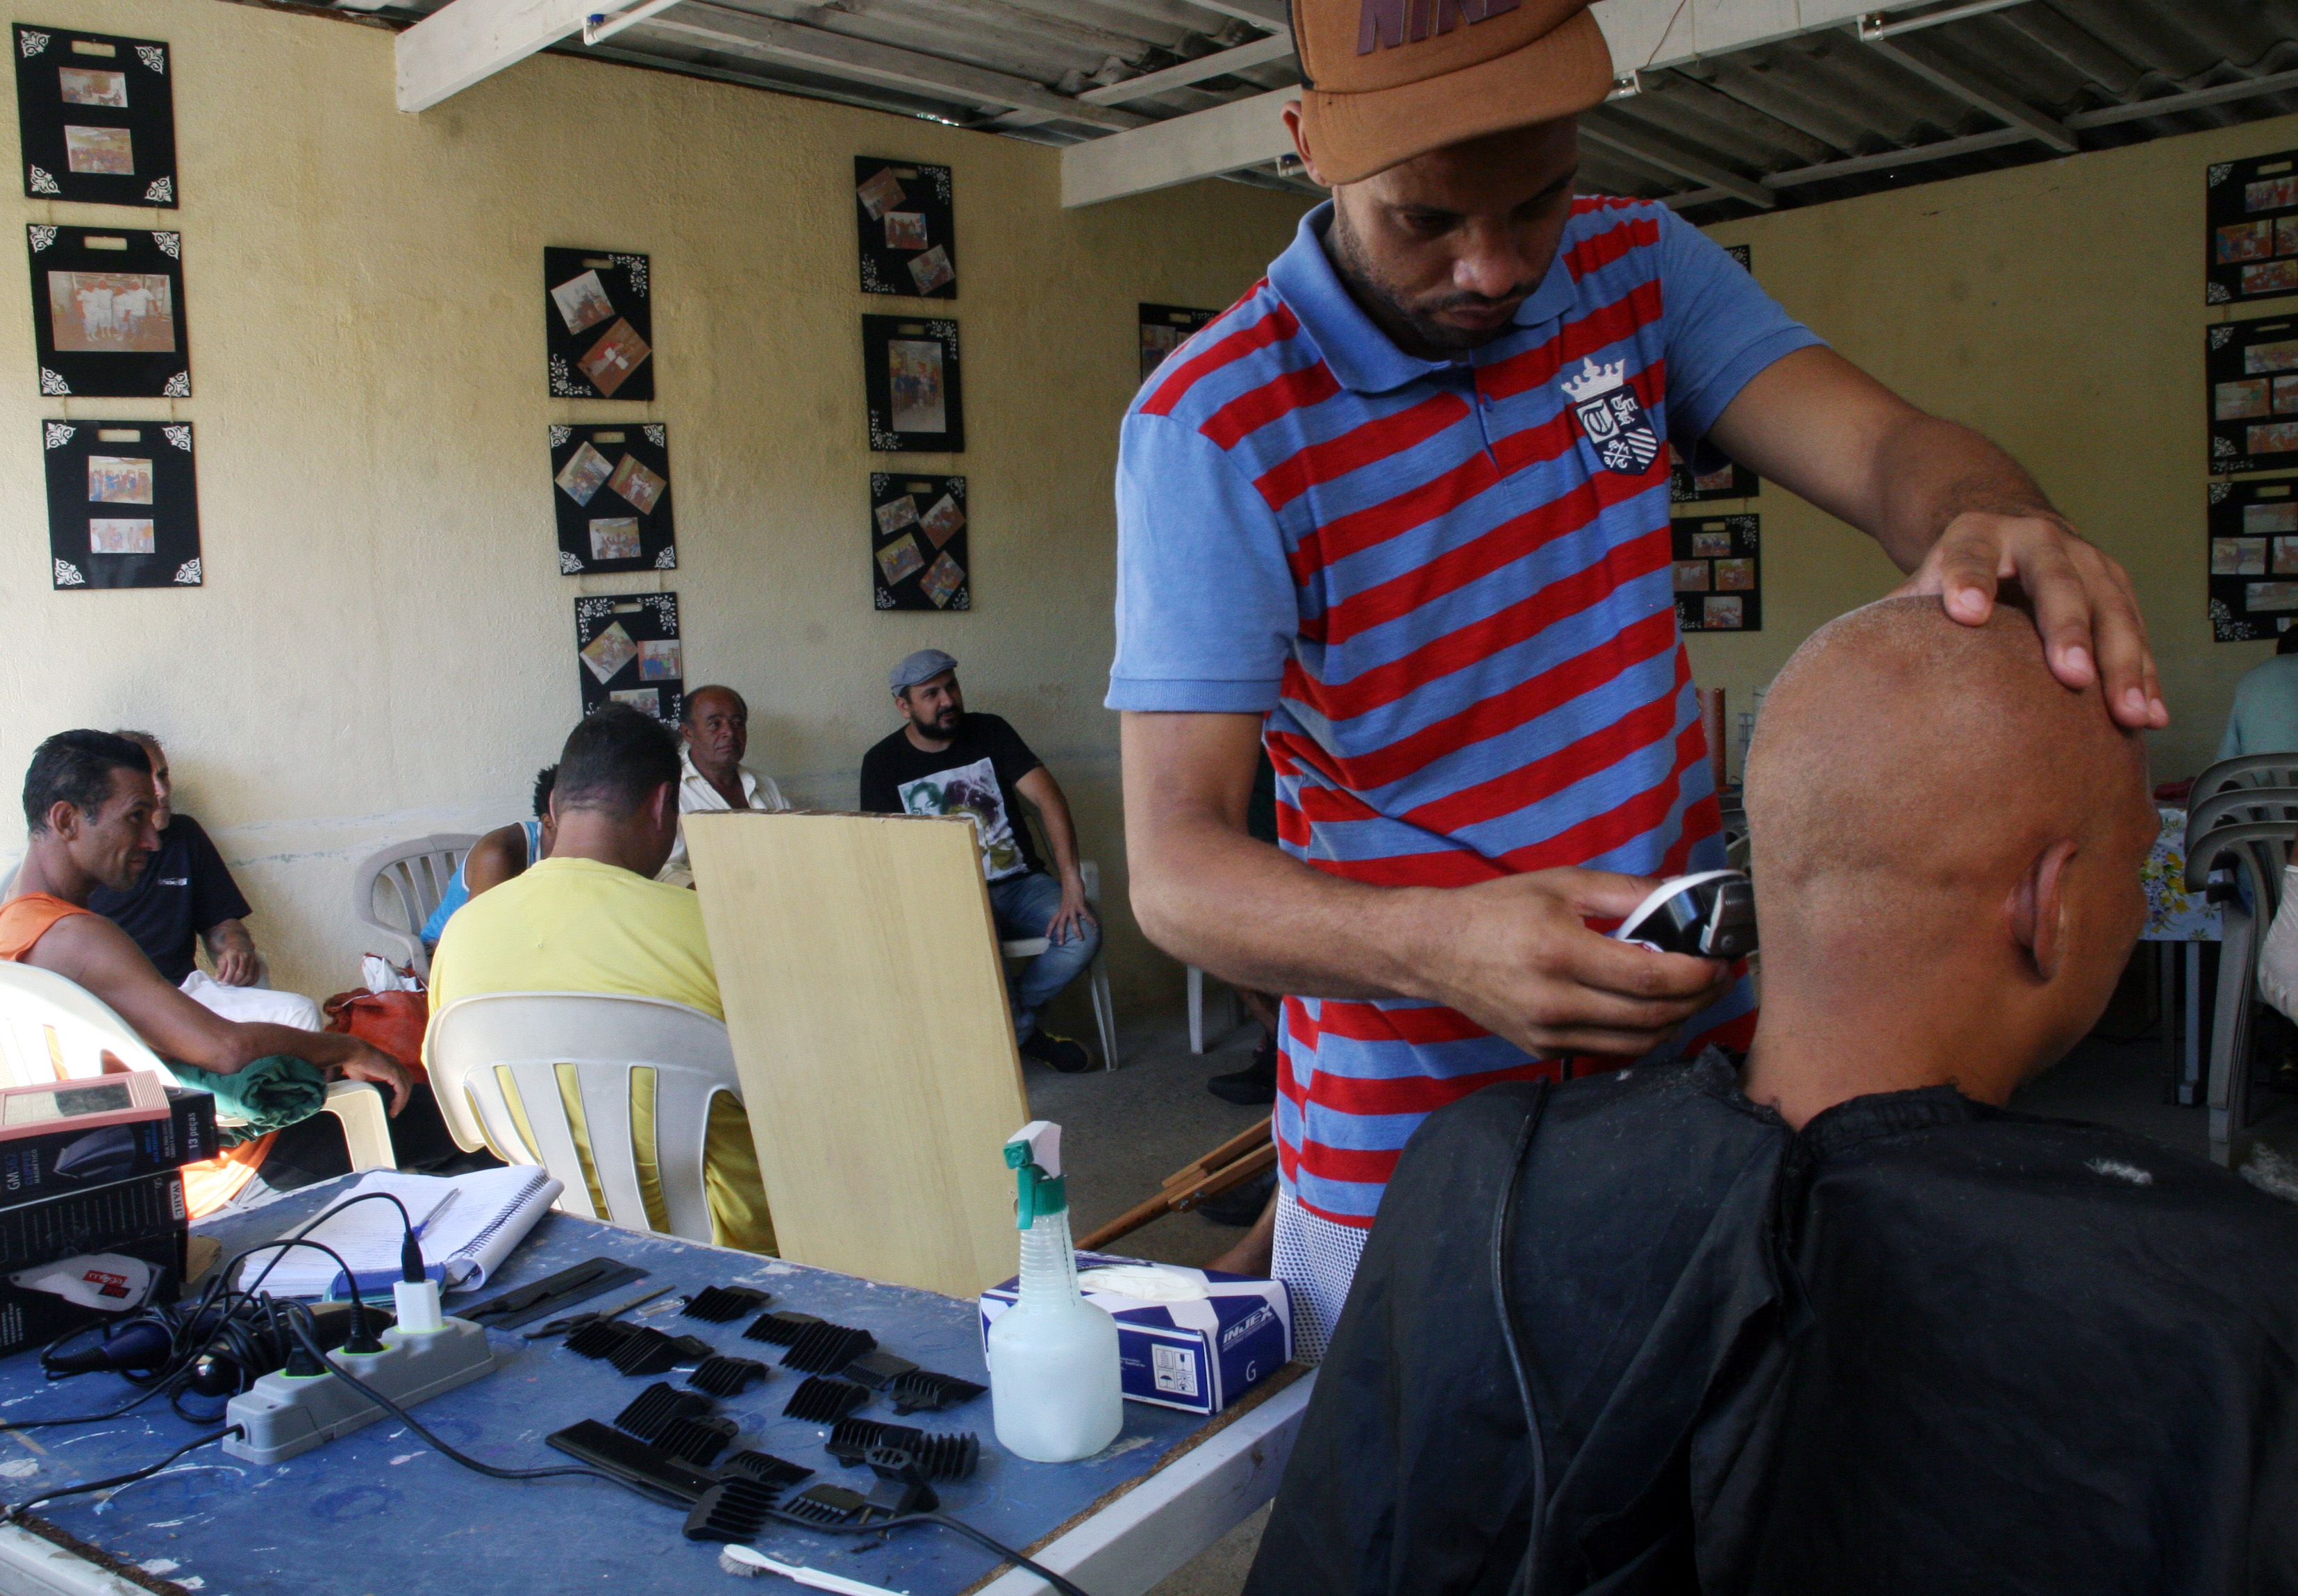 Foto de um convivente cortando o cabelo de outro convivente durante horário de atendimento na Casa Porto Seguro. No fundo há outros conviventes sentados nas cadeiras conversando.